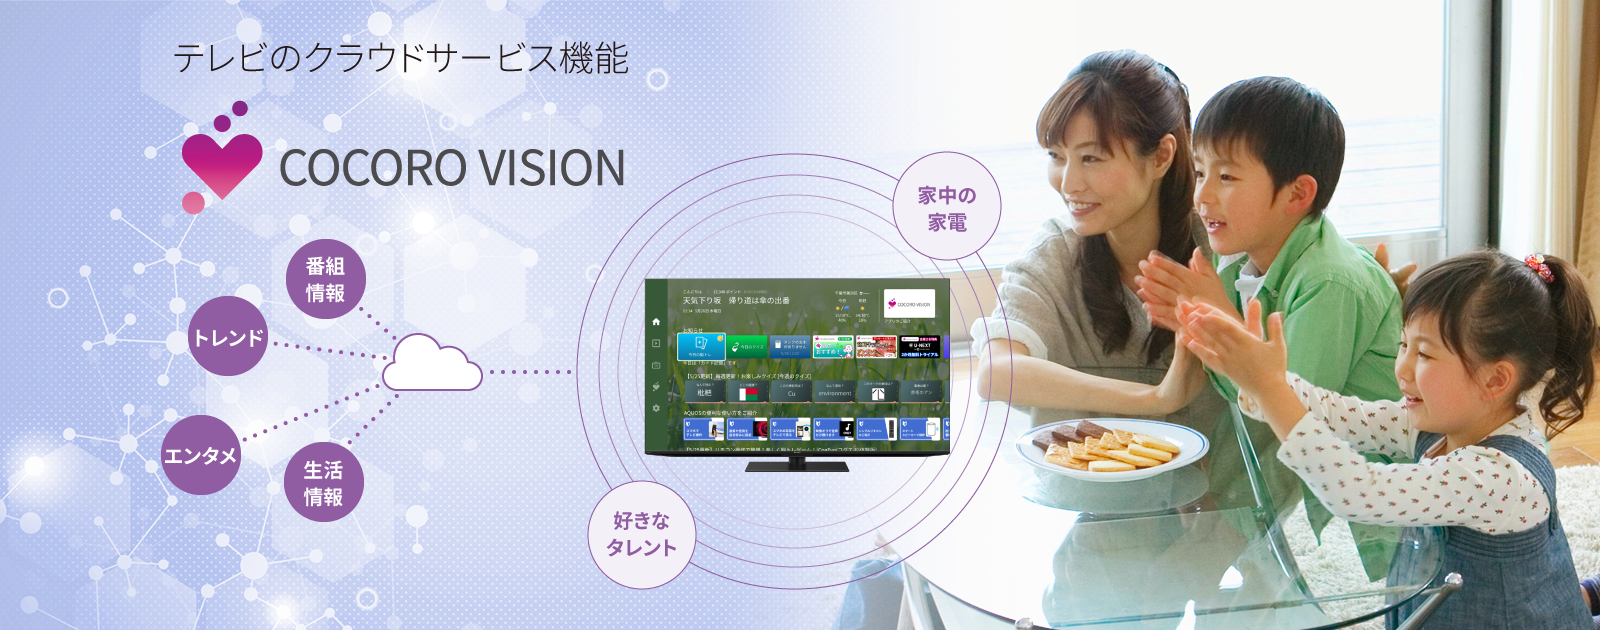 テレビのクラウドサービス機能 COCORO VISION